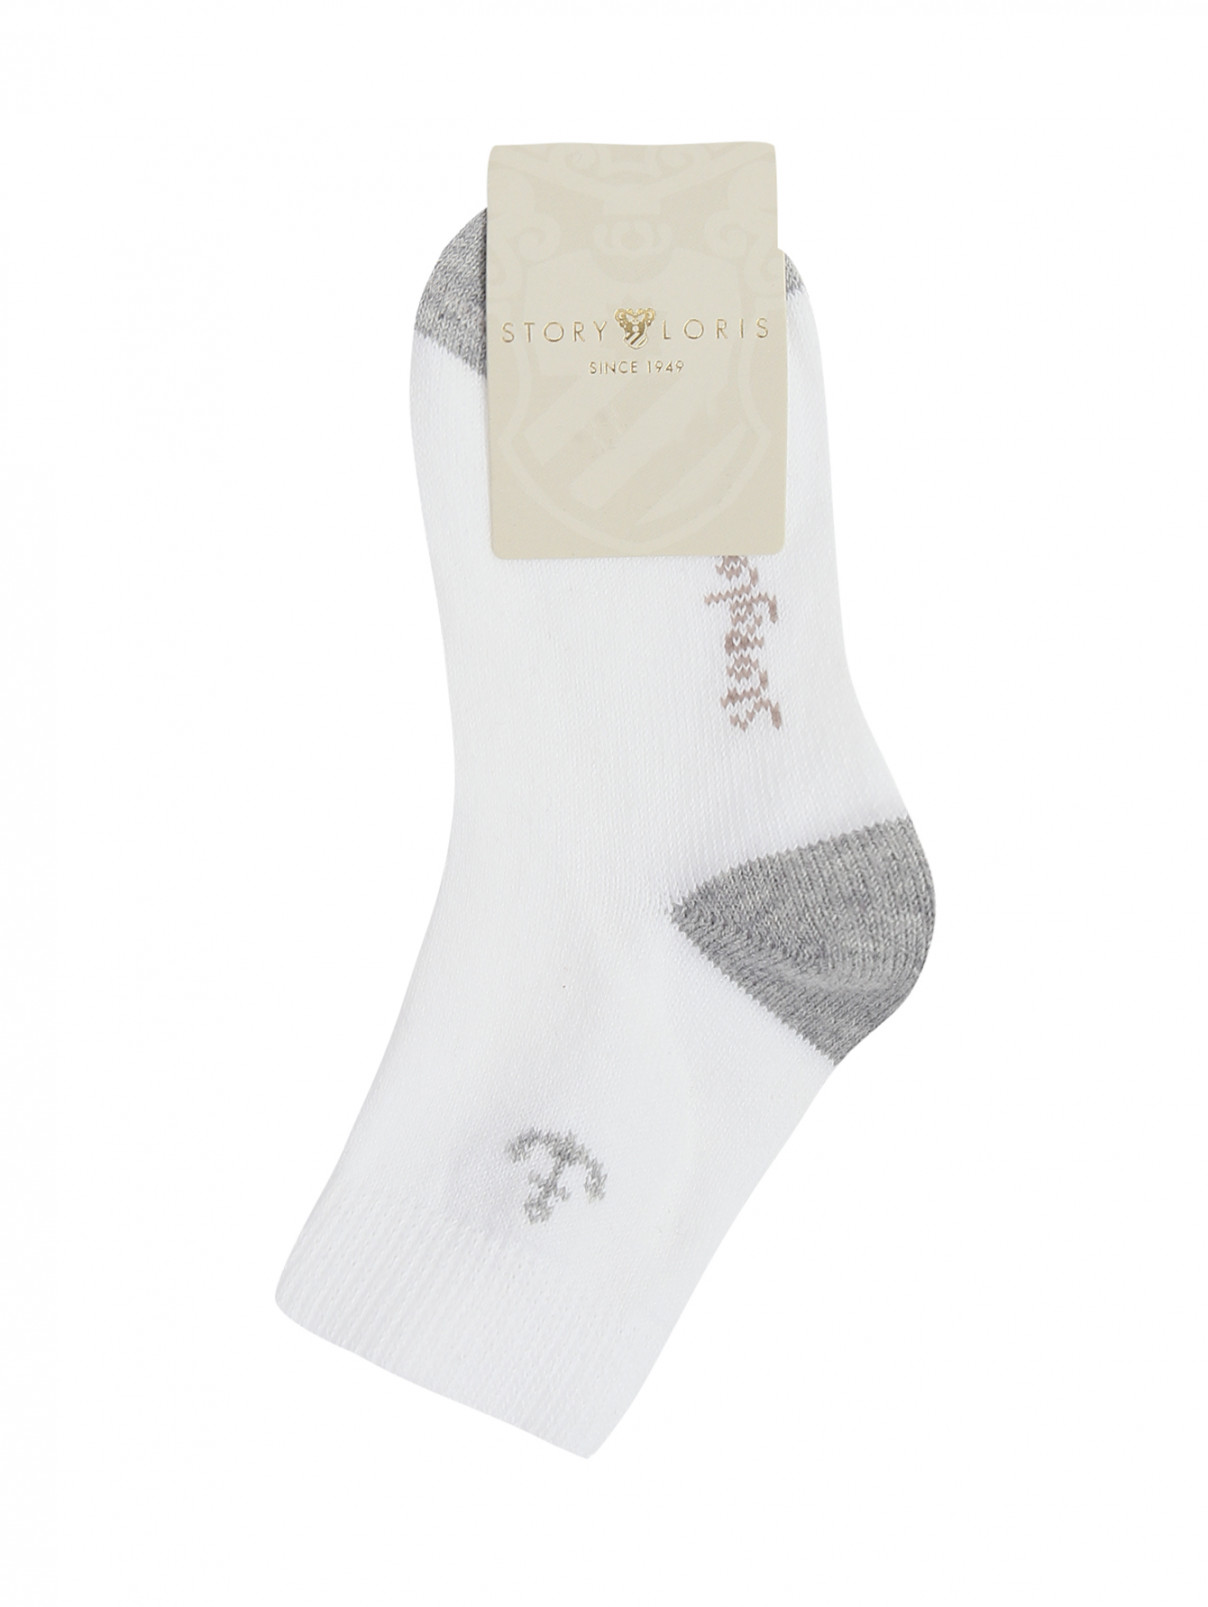 Носки из хлопка с контрастной отделкой Story Loris  –  Общий вид  – Цвет:  Белый